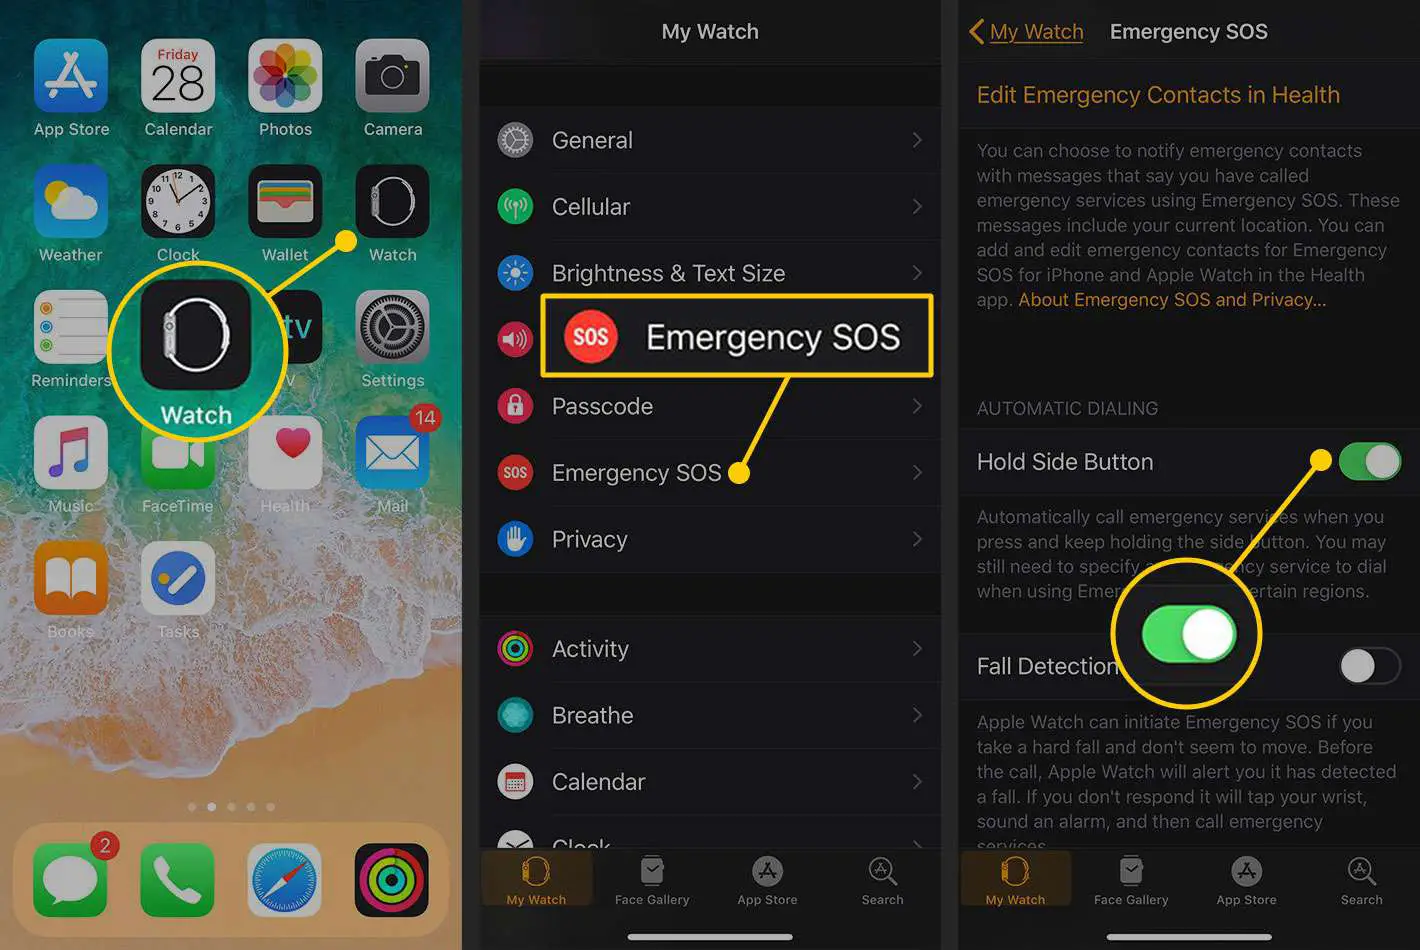 Configurações de emergência SOS no aplicativo iPhone Watch